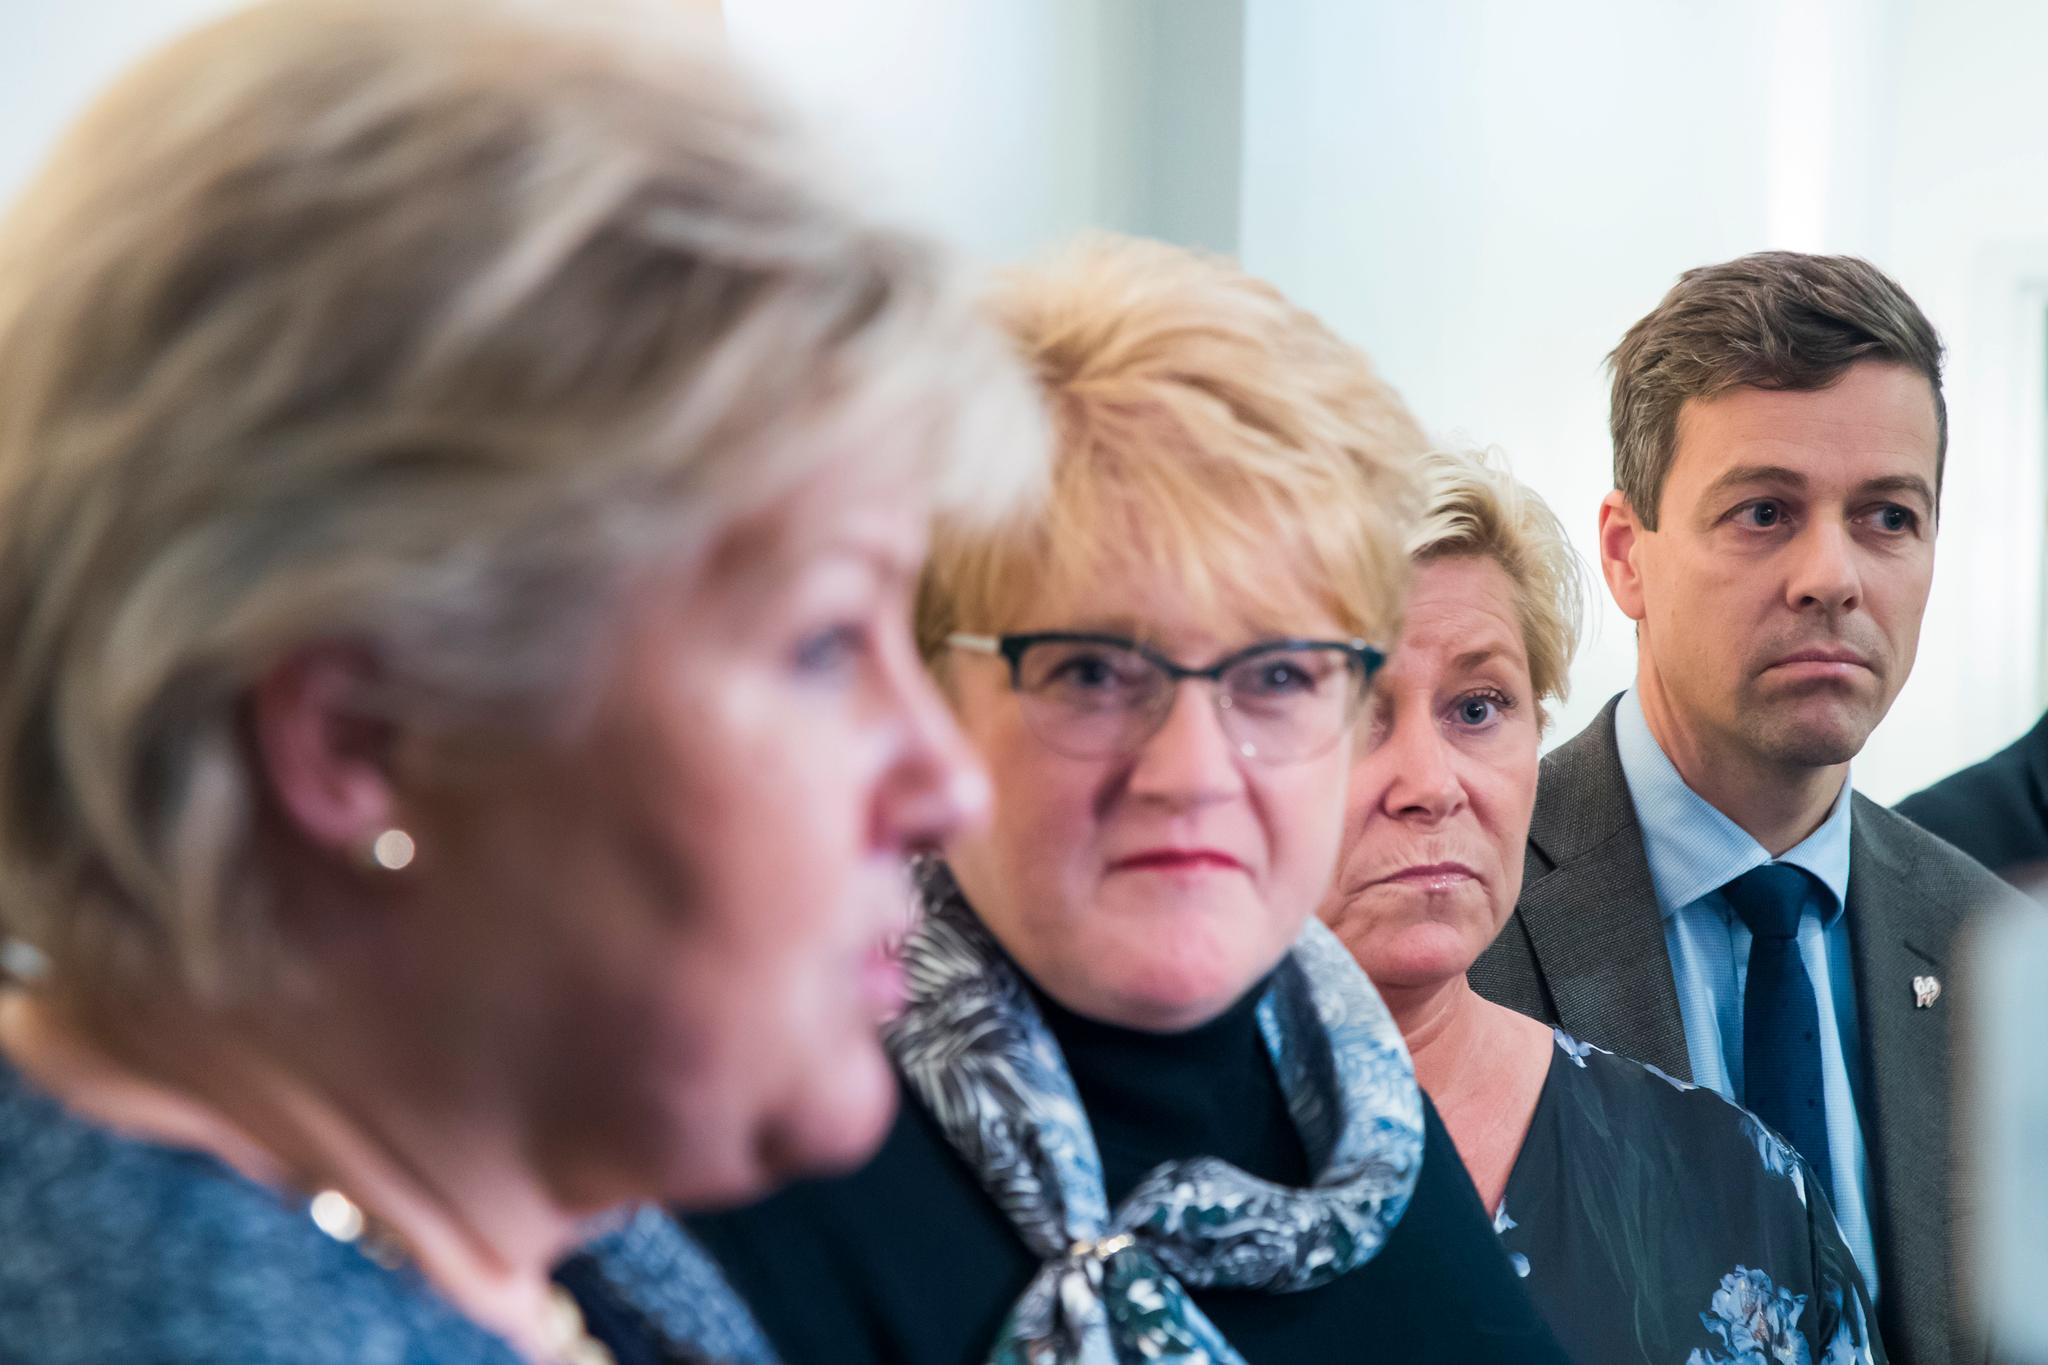   Venstre-leder Trine Skei Grande og statsminister Erna Solberg (H) har en god tone seg imellom. Men når Venstres landsstyre i helgen diskuterer om partiet bør innlede regjeringsforhandlinger eller ikke, så er det politisk gjennomslag som avgjør.  